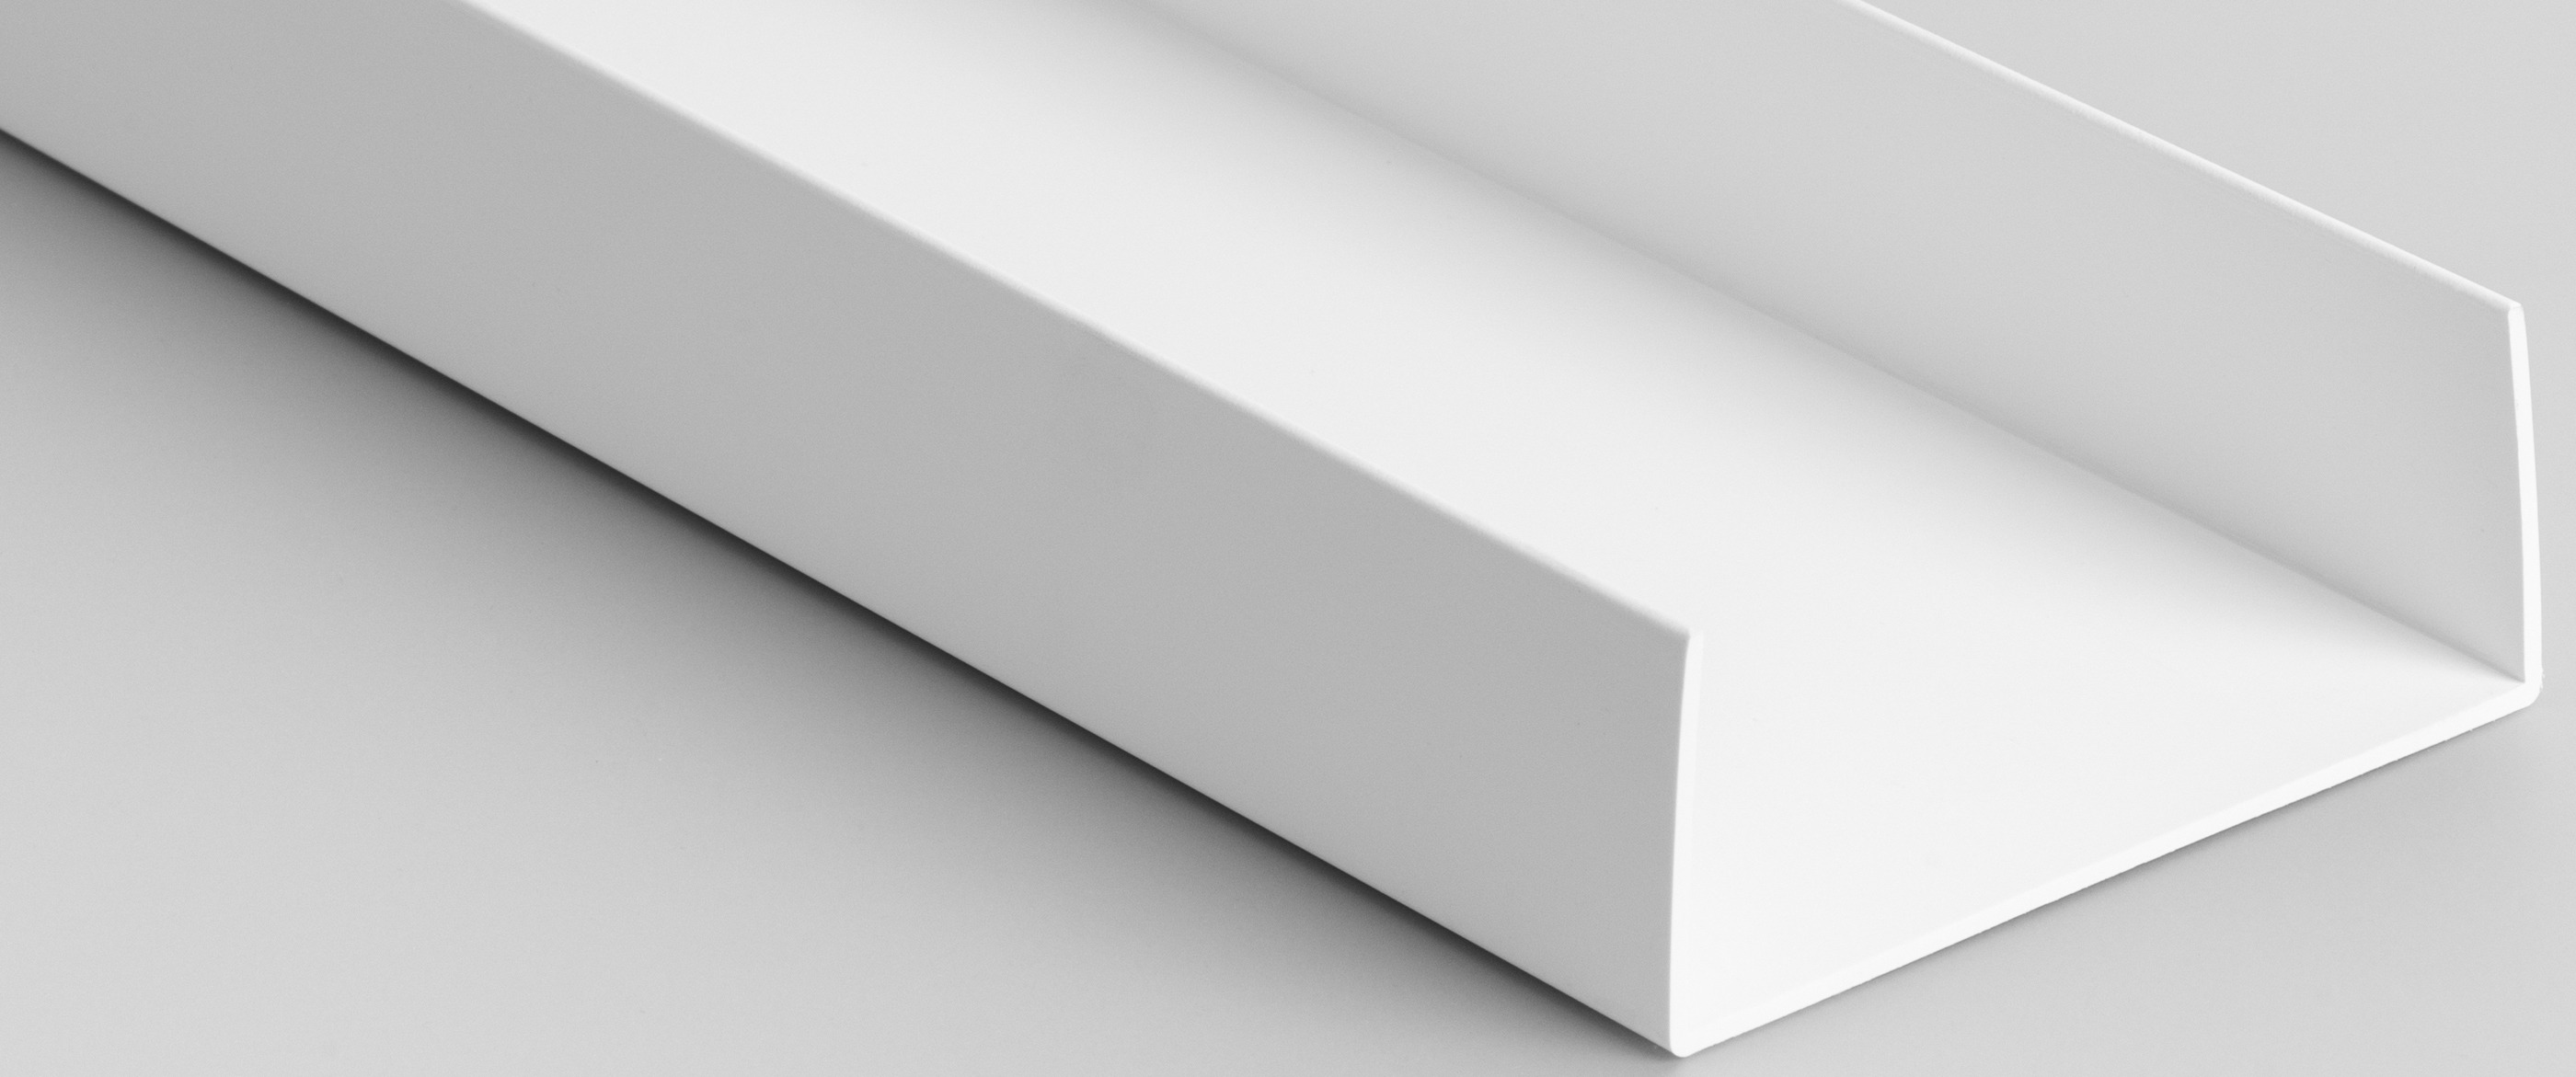 ¿PVC o aluminio? Diferencias y ventajas del PVC para la industria